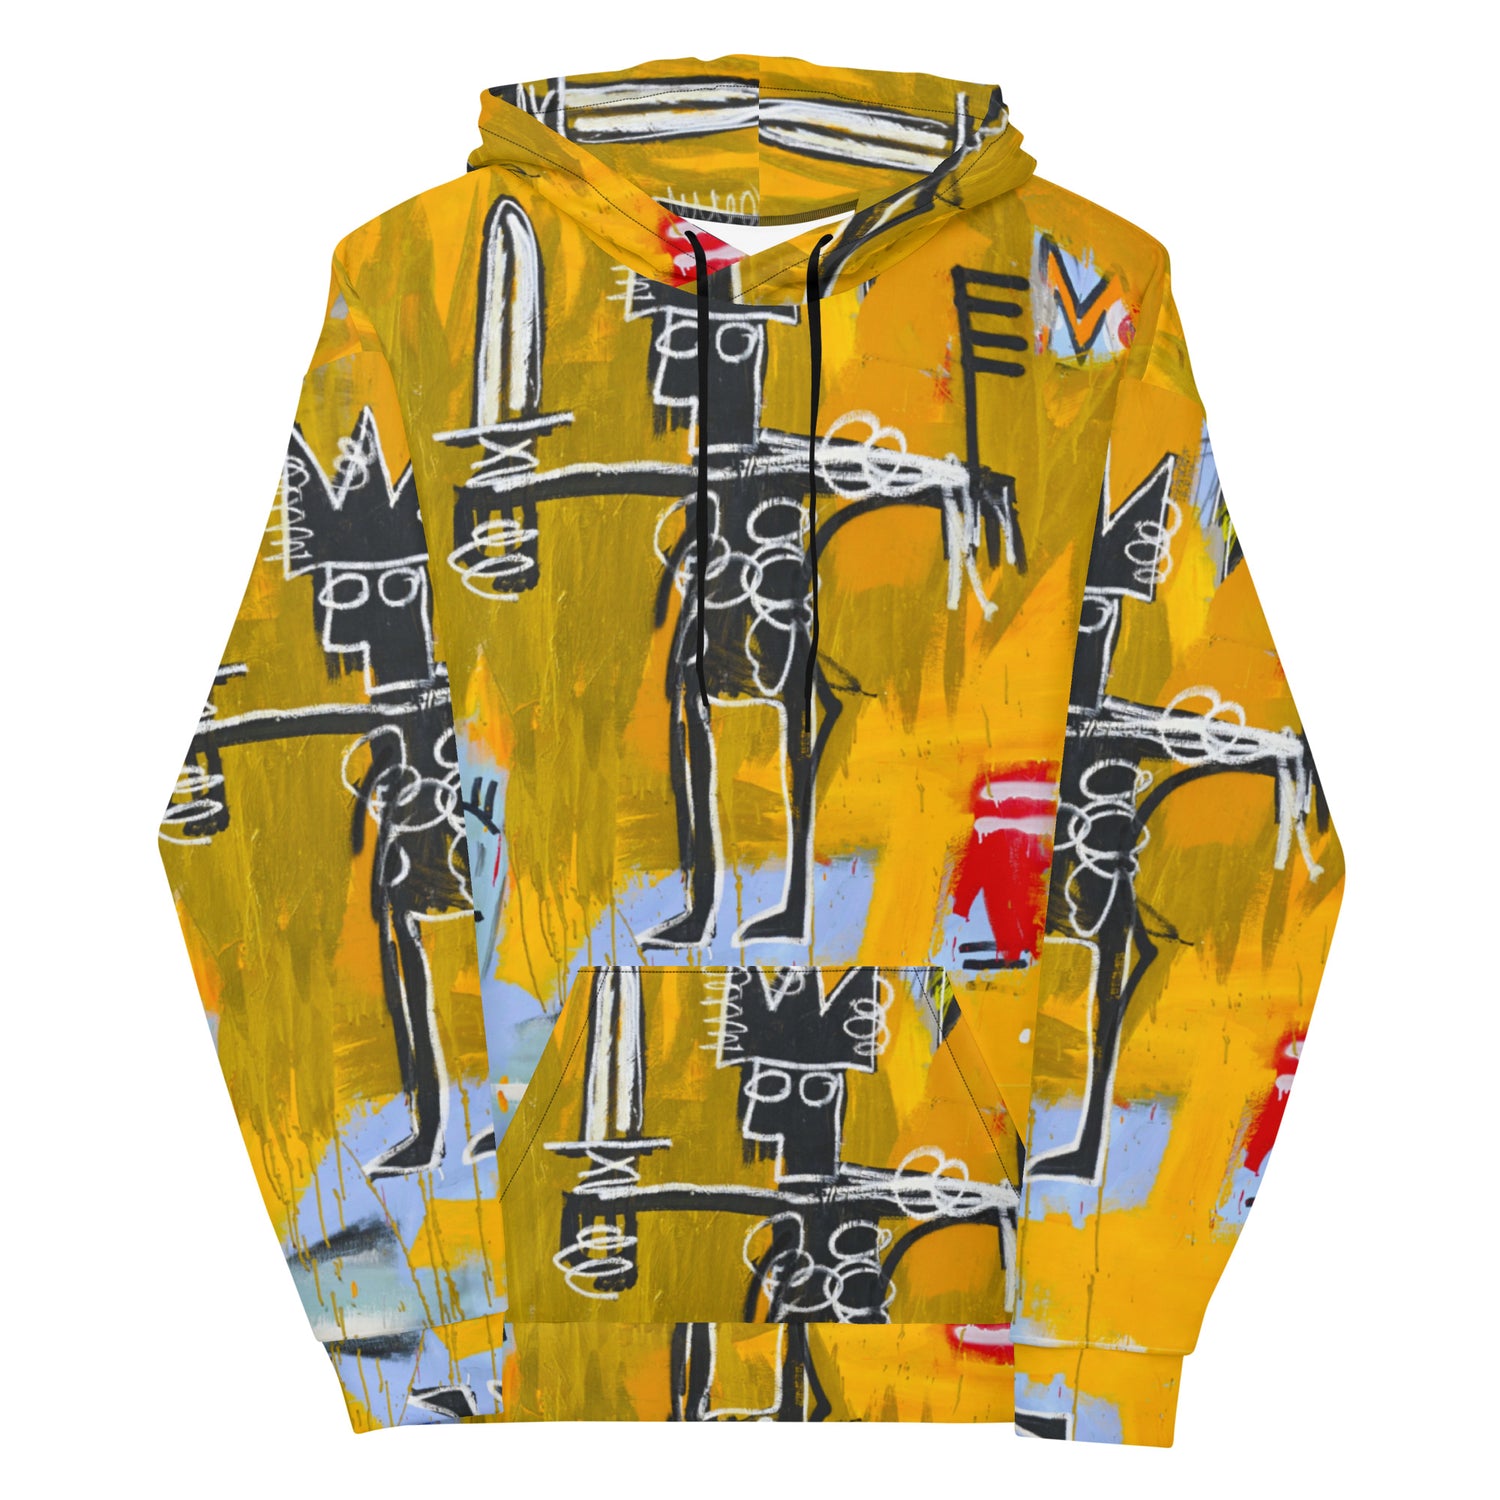 Jean-Michel Basquiat "Julius Caesar on Gold" Artwork Printed Premium Streetwear Sweatshirt Hoodie Harajuku Graffiti